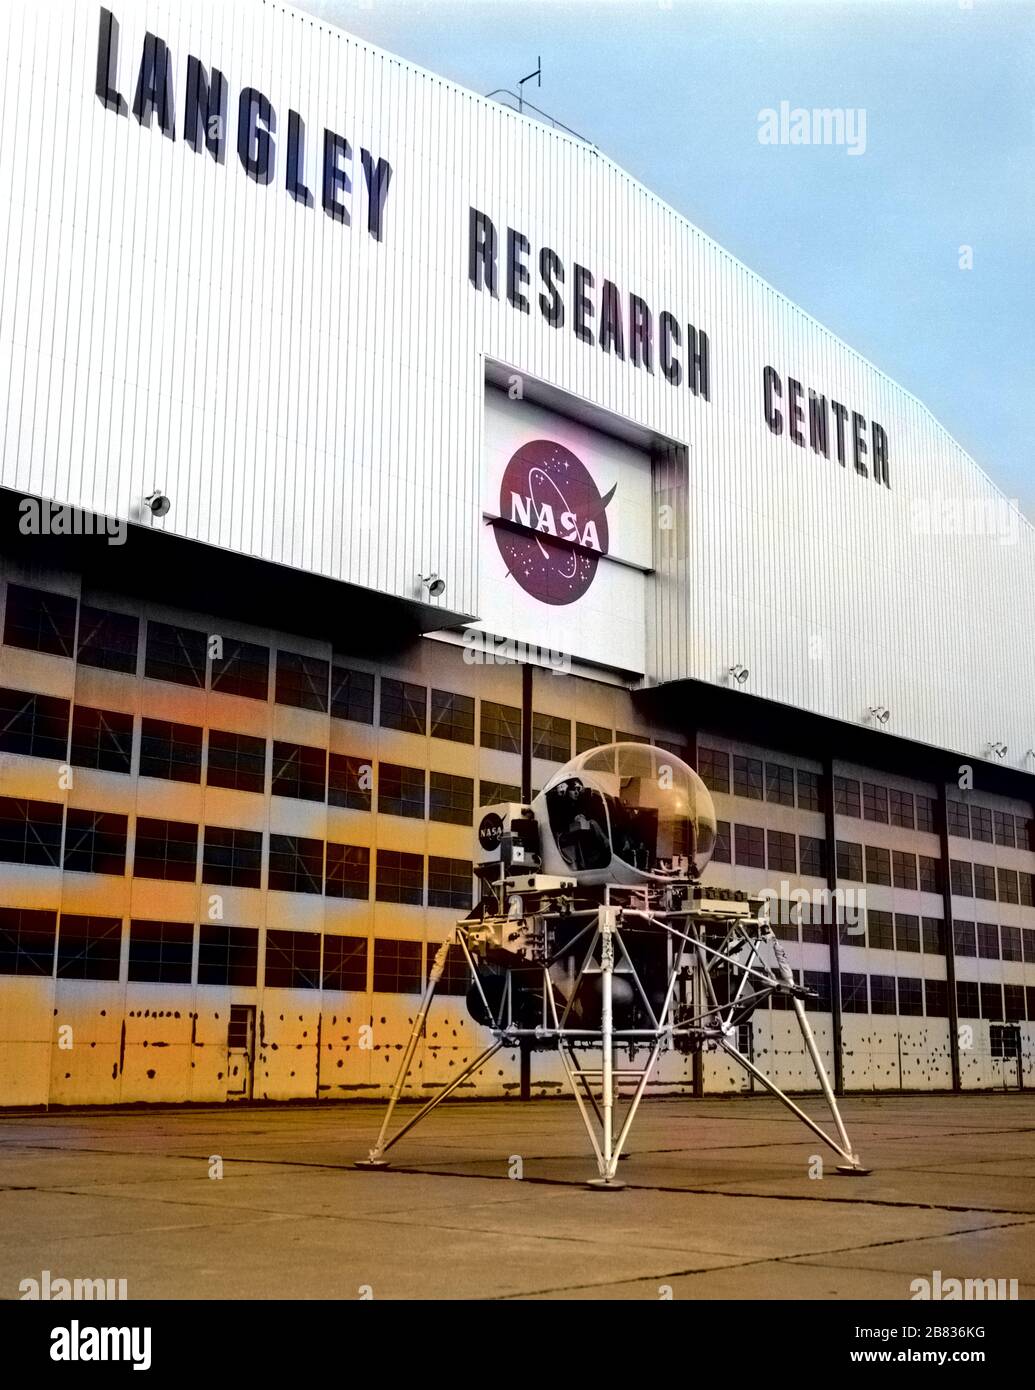 Lunar Landing Research Vehicle di fronte all'hangar della NASA Langley al Langley Research Center, Hampton, Virginia, 2 dicembre 1963. Per gentile concessione di National Aeronautics and Space Administration (NASA). Nota: L'immagine è stata colorata digitalmente utilizzando un processo moderno. I colori potrebbero non essere precisi in termini di periodo. () Foto Stock